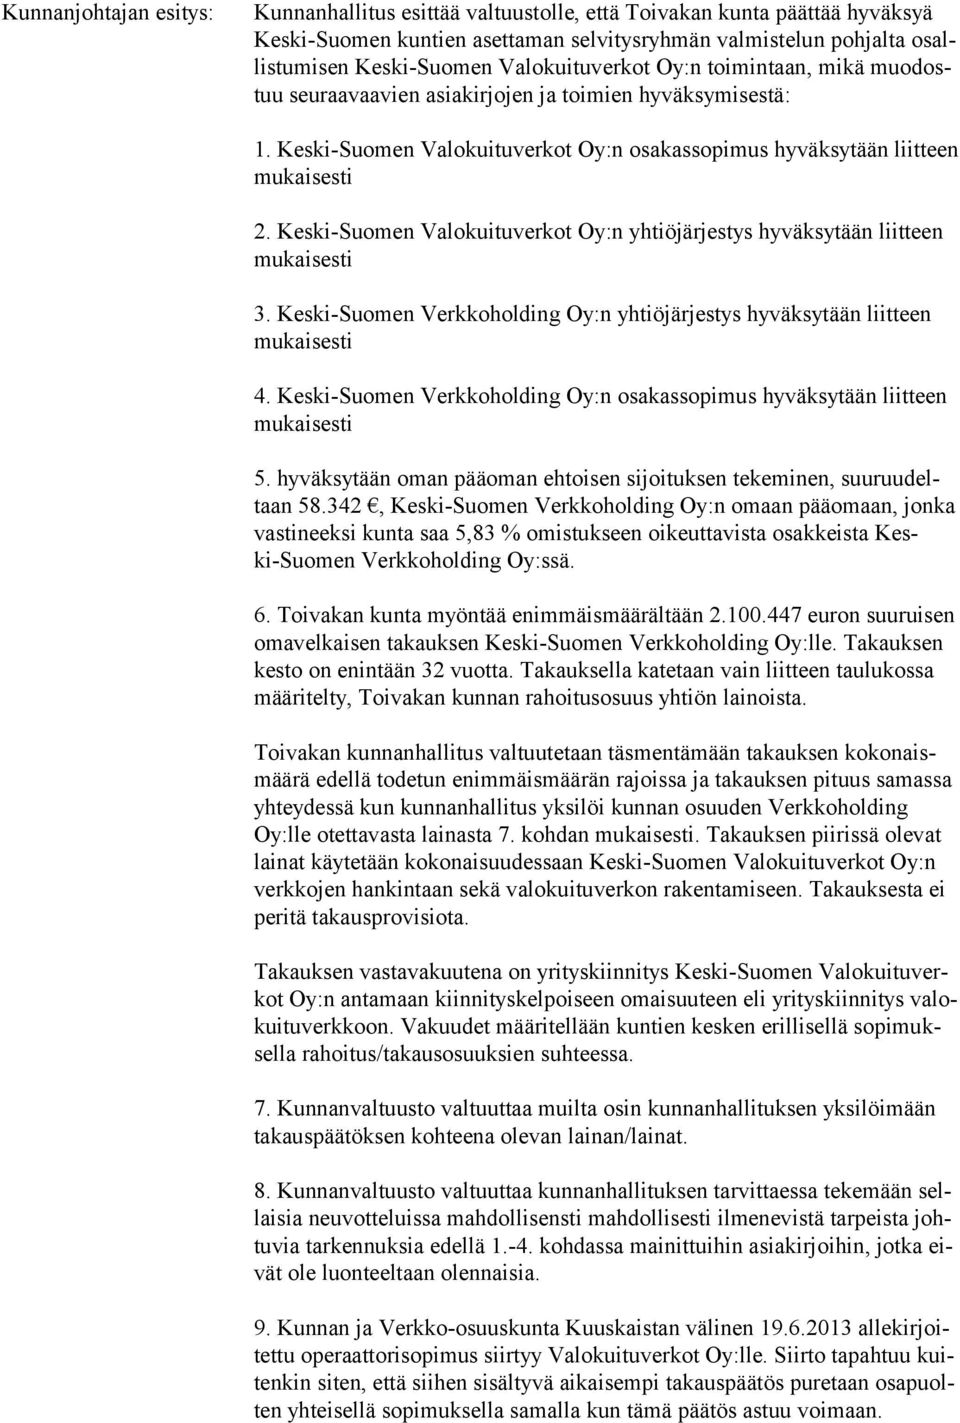 Keski-Suomen Valokuituverkot Oy:n yhtiöjärjestys hyväksytään liitteen 3. Keski-Suomen Verkkoholding Oy:n yhtiöjärjestys hyväksytään liitteen 4.